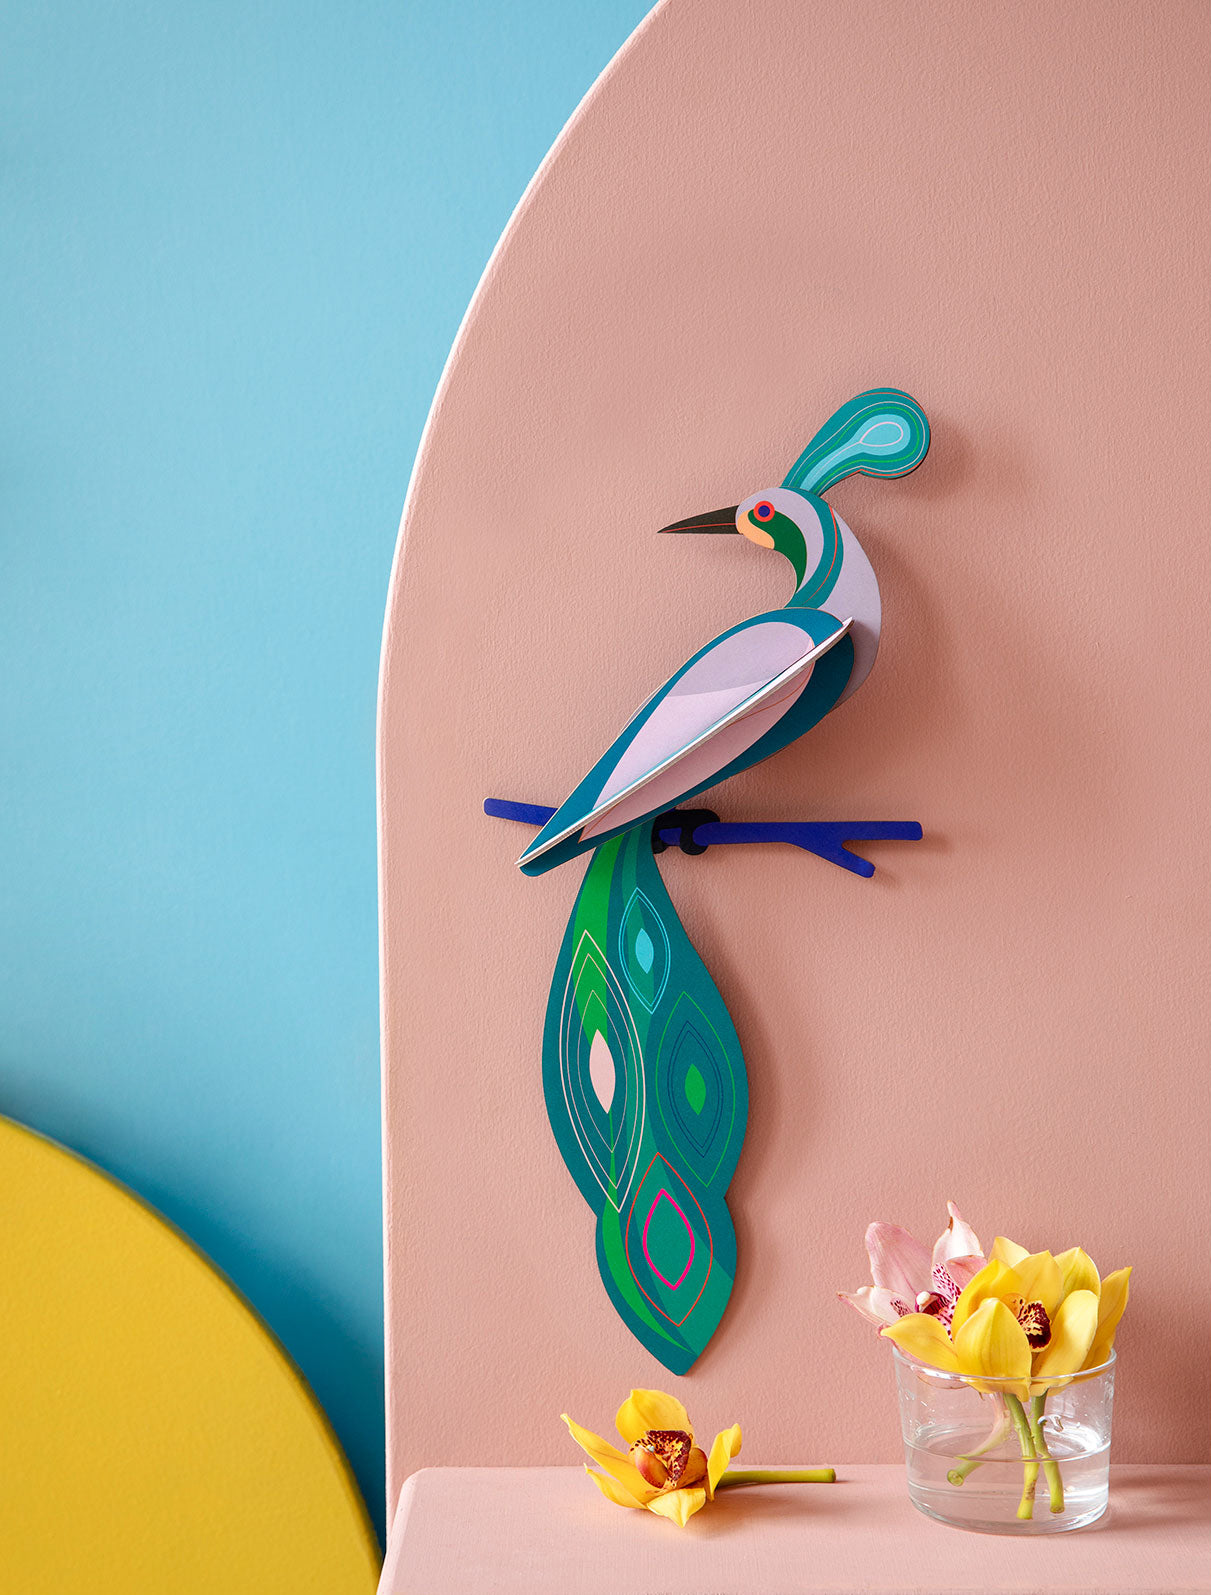 Závěsná dekorace na zeď rajský pták FIji od značky Studio ROOF